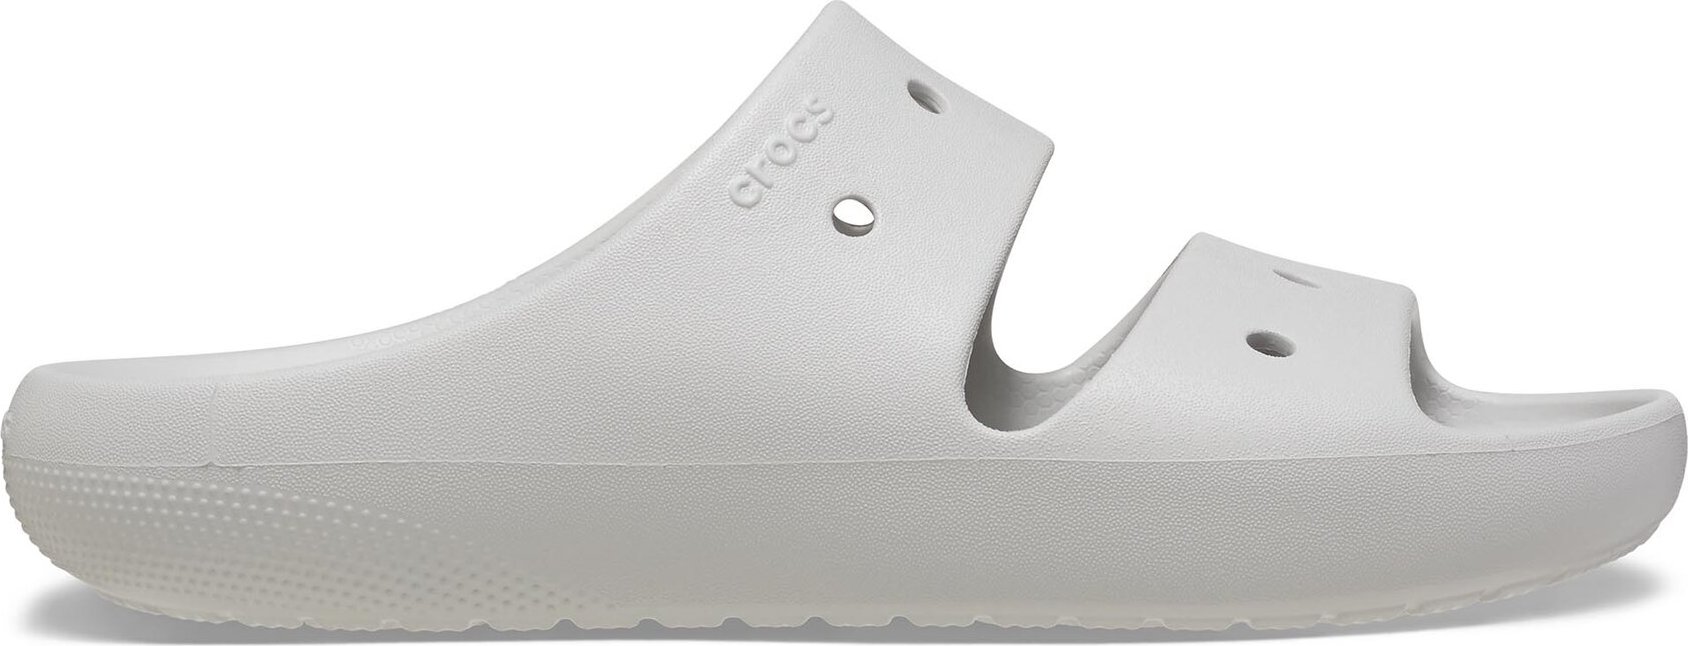 Nazouváky Crocs Classic Sandal V 209403 Atmosphere 1FT